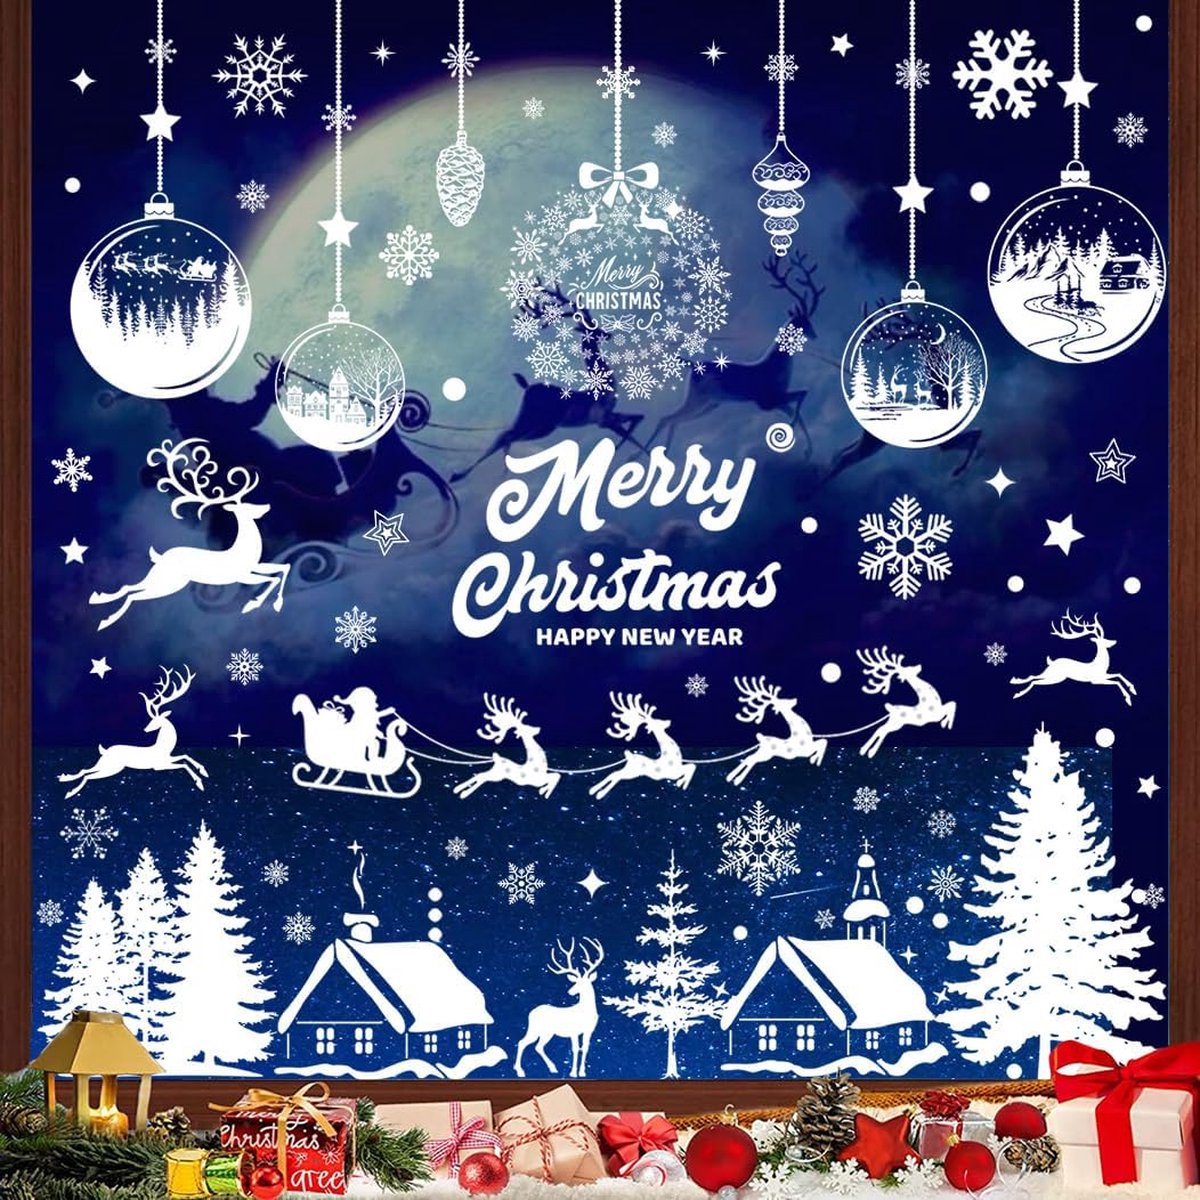 Raamstickers Kerst/winter - Zelfklevend - 11 vellen raamfolie - Kerstballen, sneeuwvlokken, rendieren, kerstman